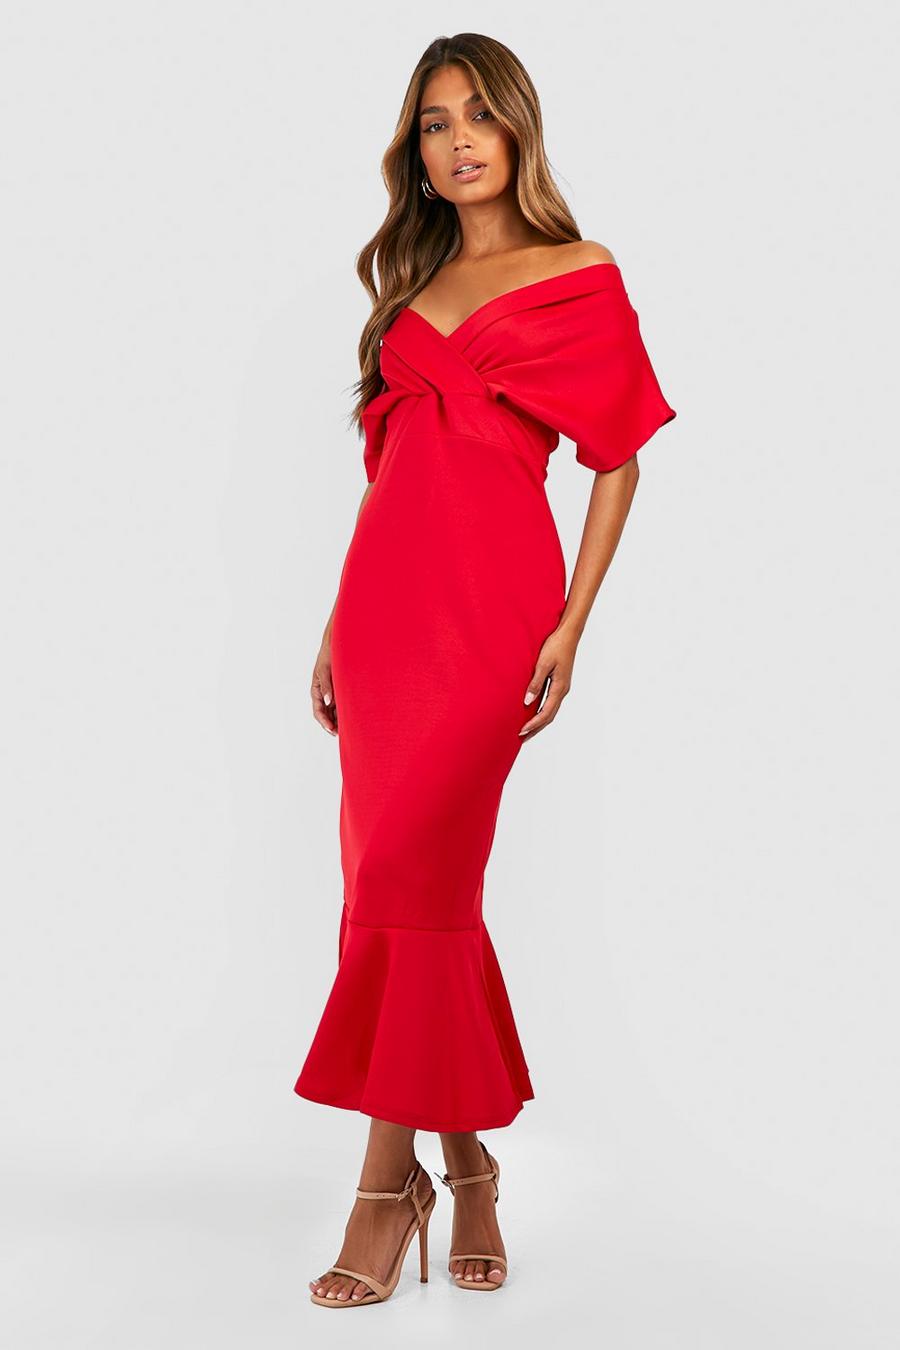 Red שמלת מידקסי פפלום מבד סקובה עם כתפיים חשופות